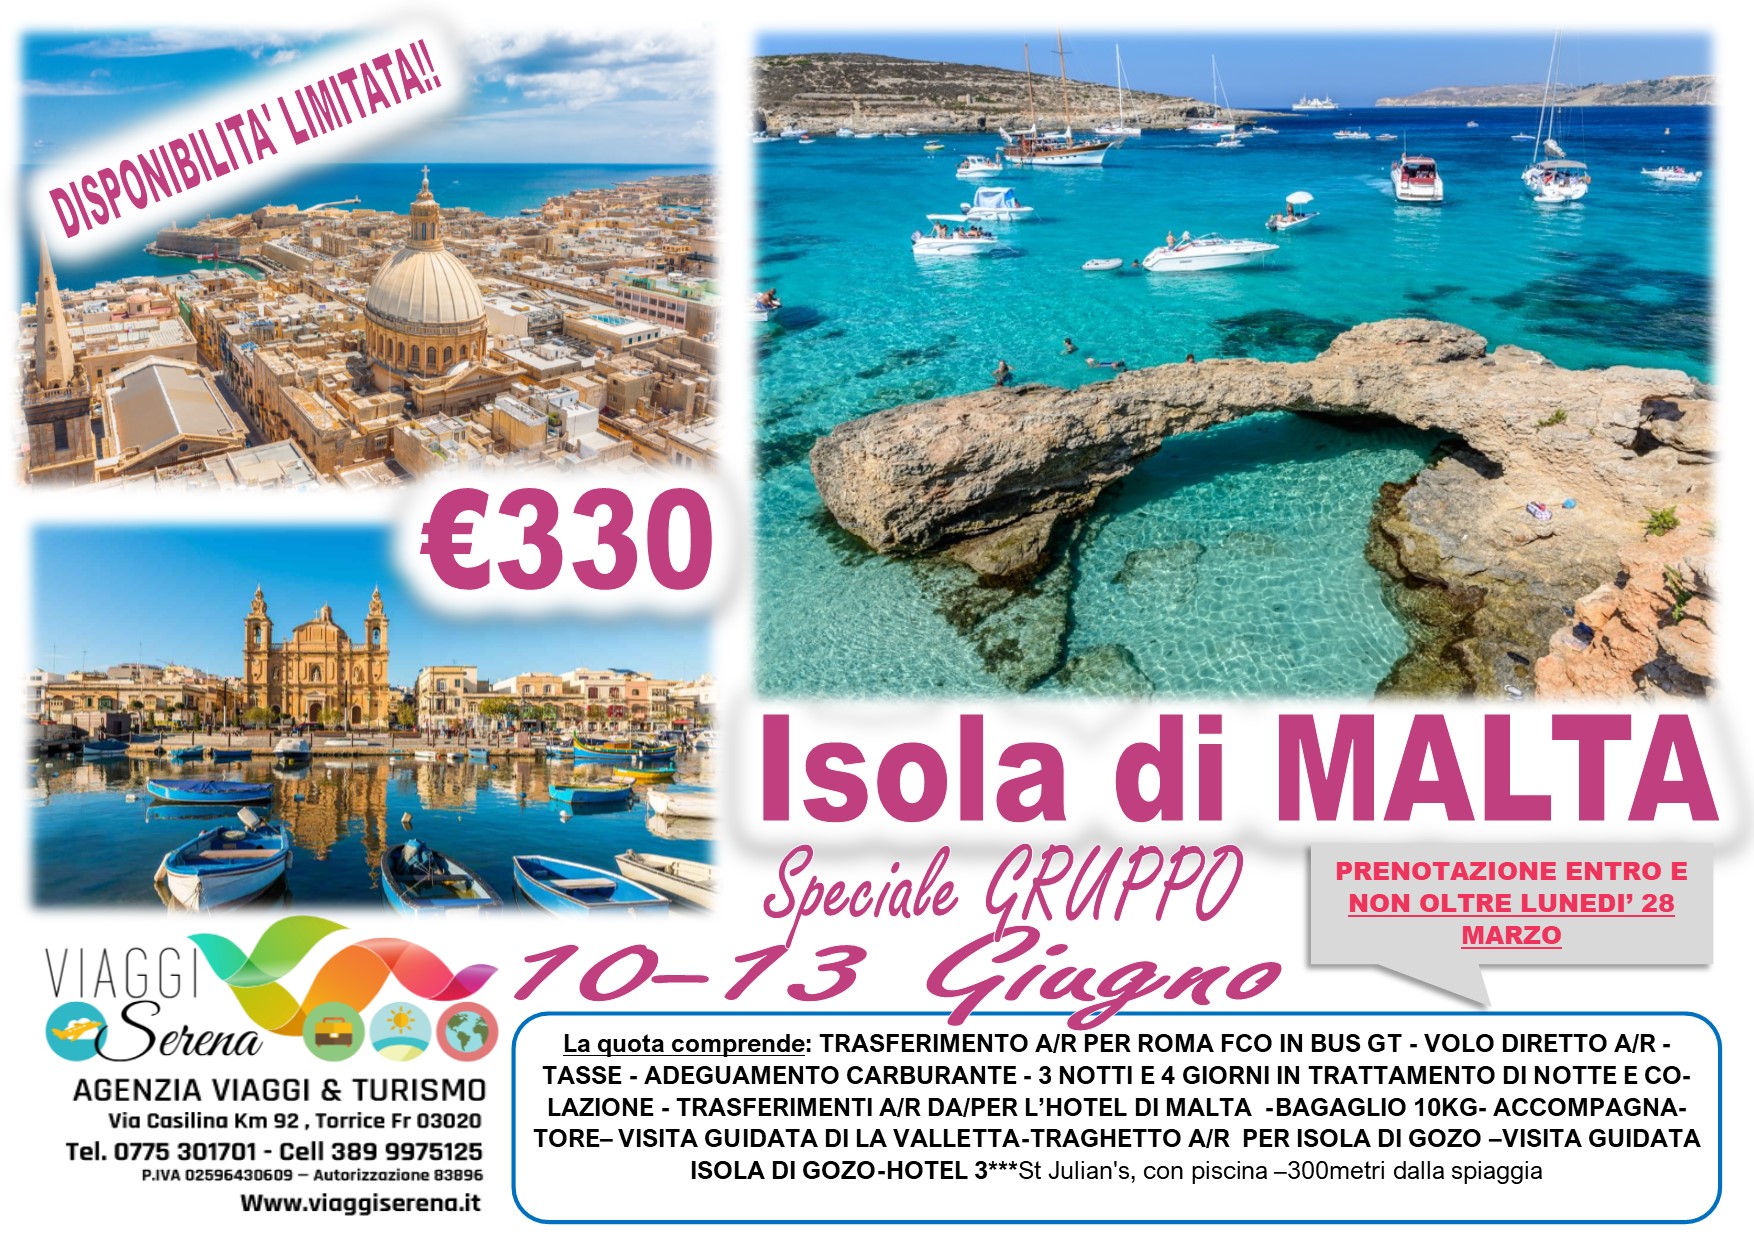 Viaggi di Gruppo: Isola di MALTA 10-13 Giugno € 330,00